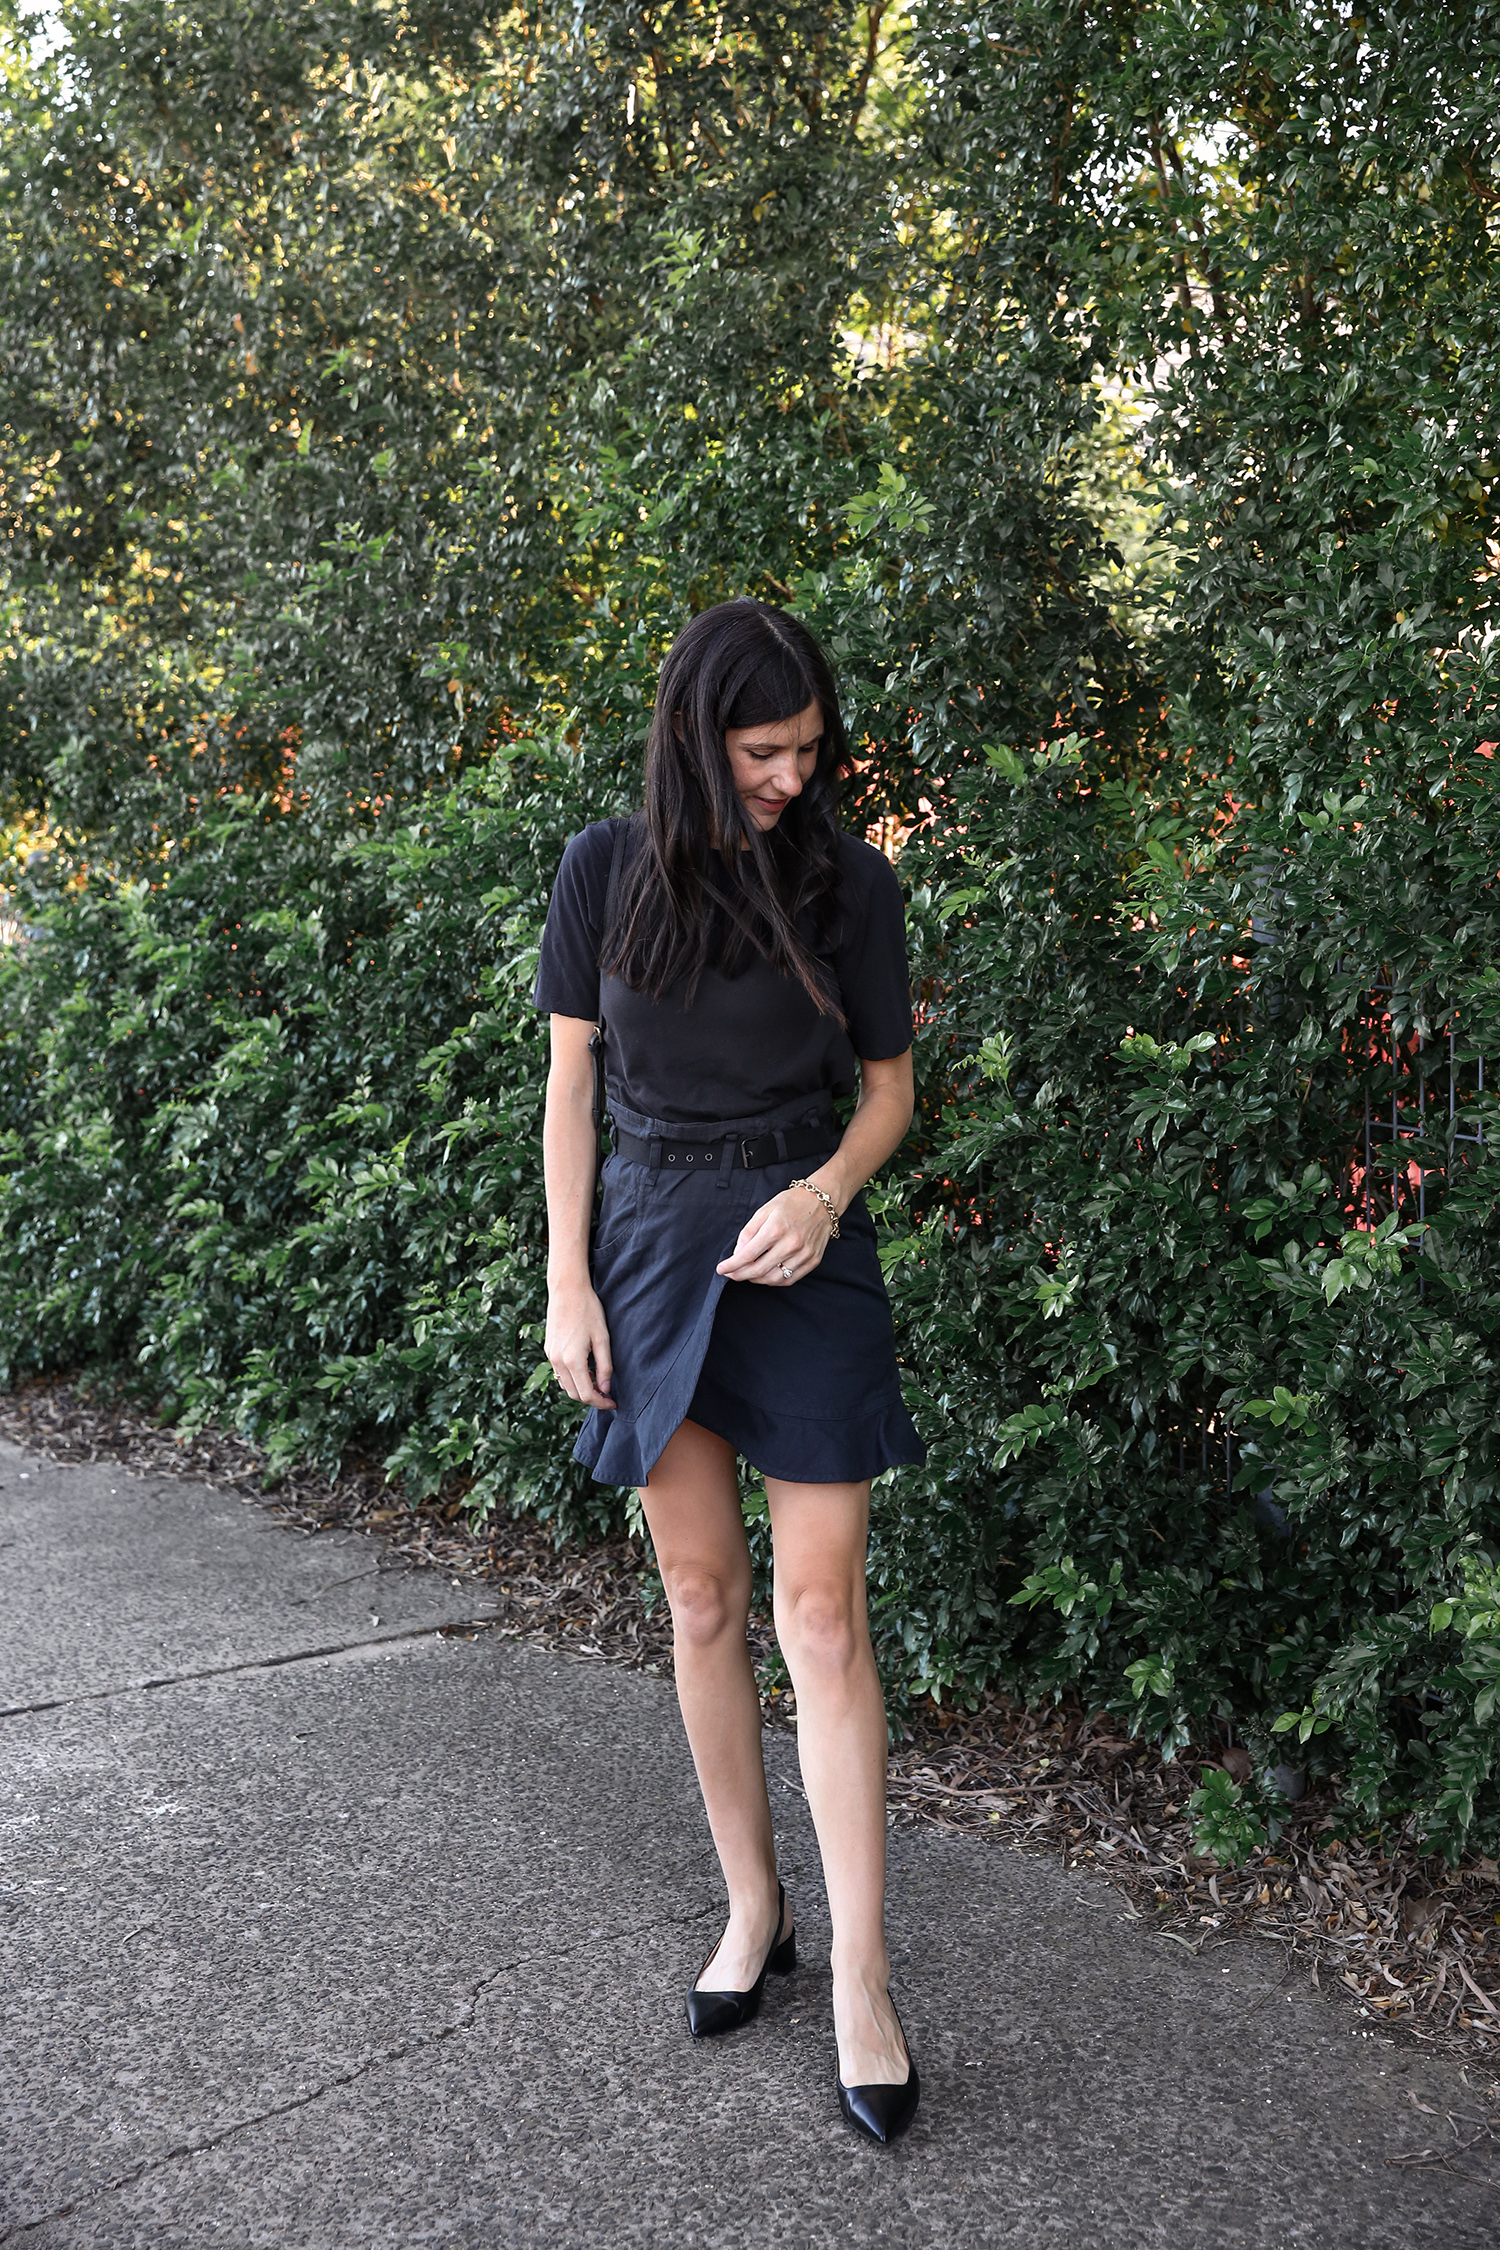 Autumn Outfit #1: Black tee + Navy ruffle skirt - Mademoiselle | Style Blog